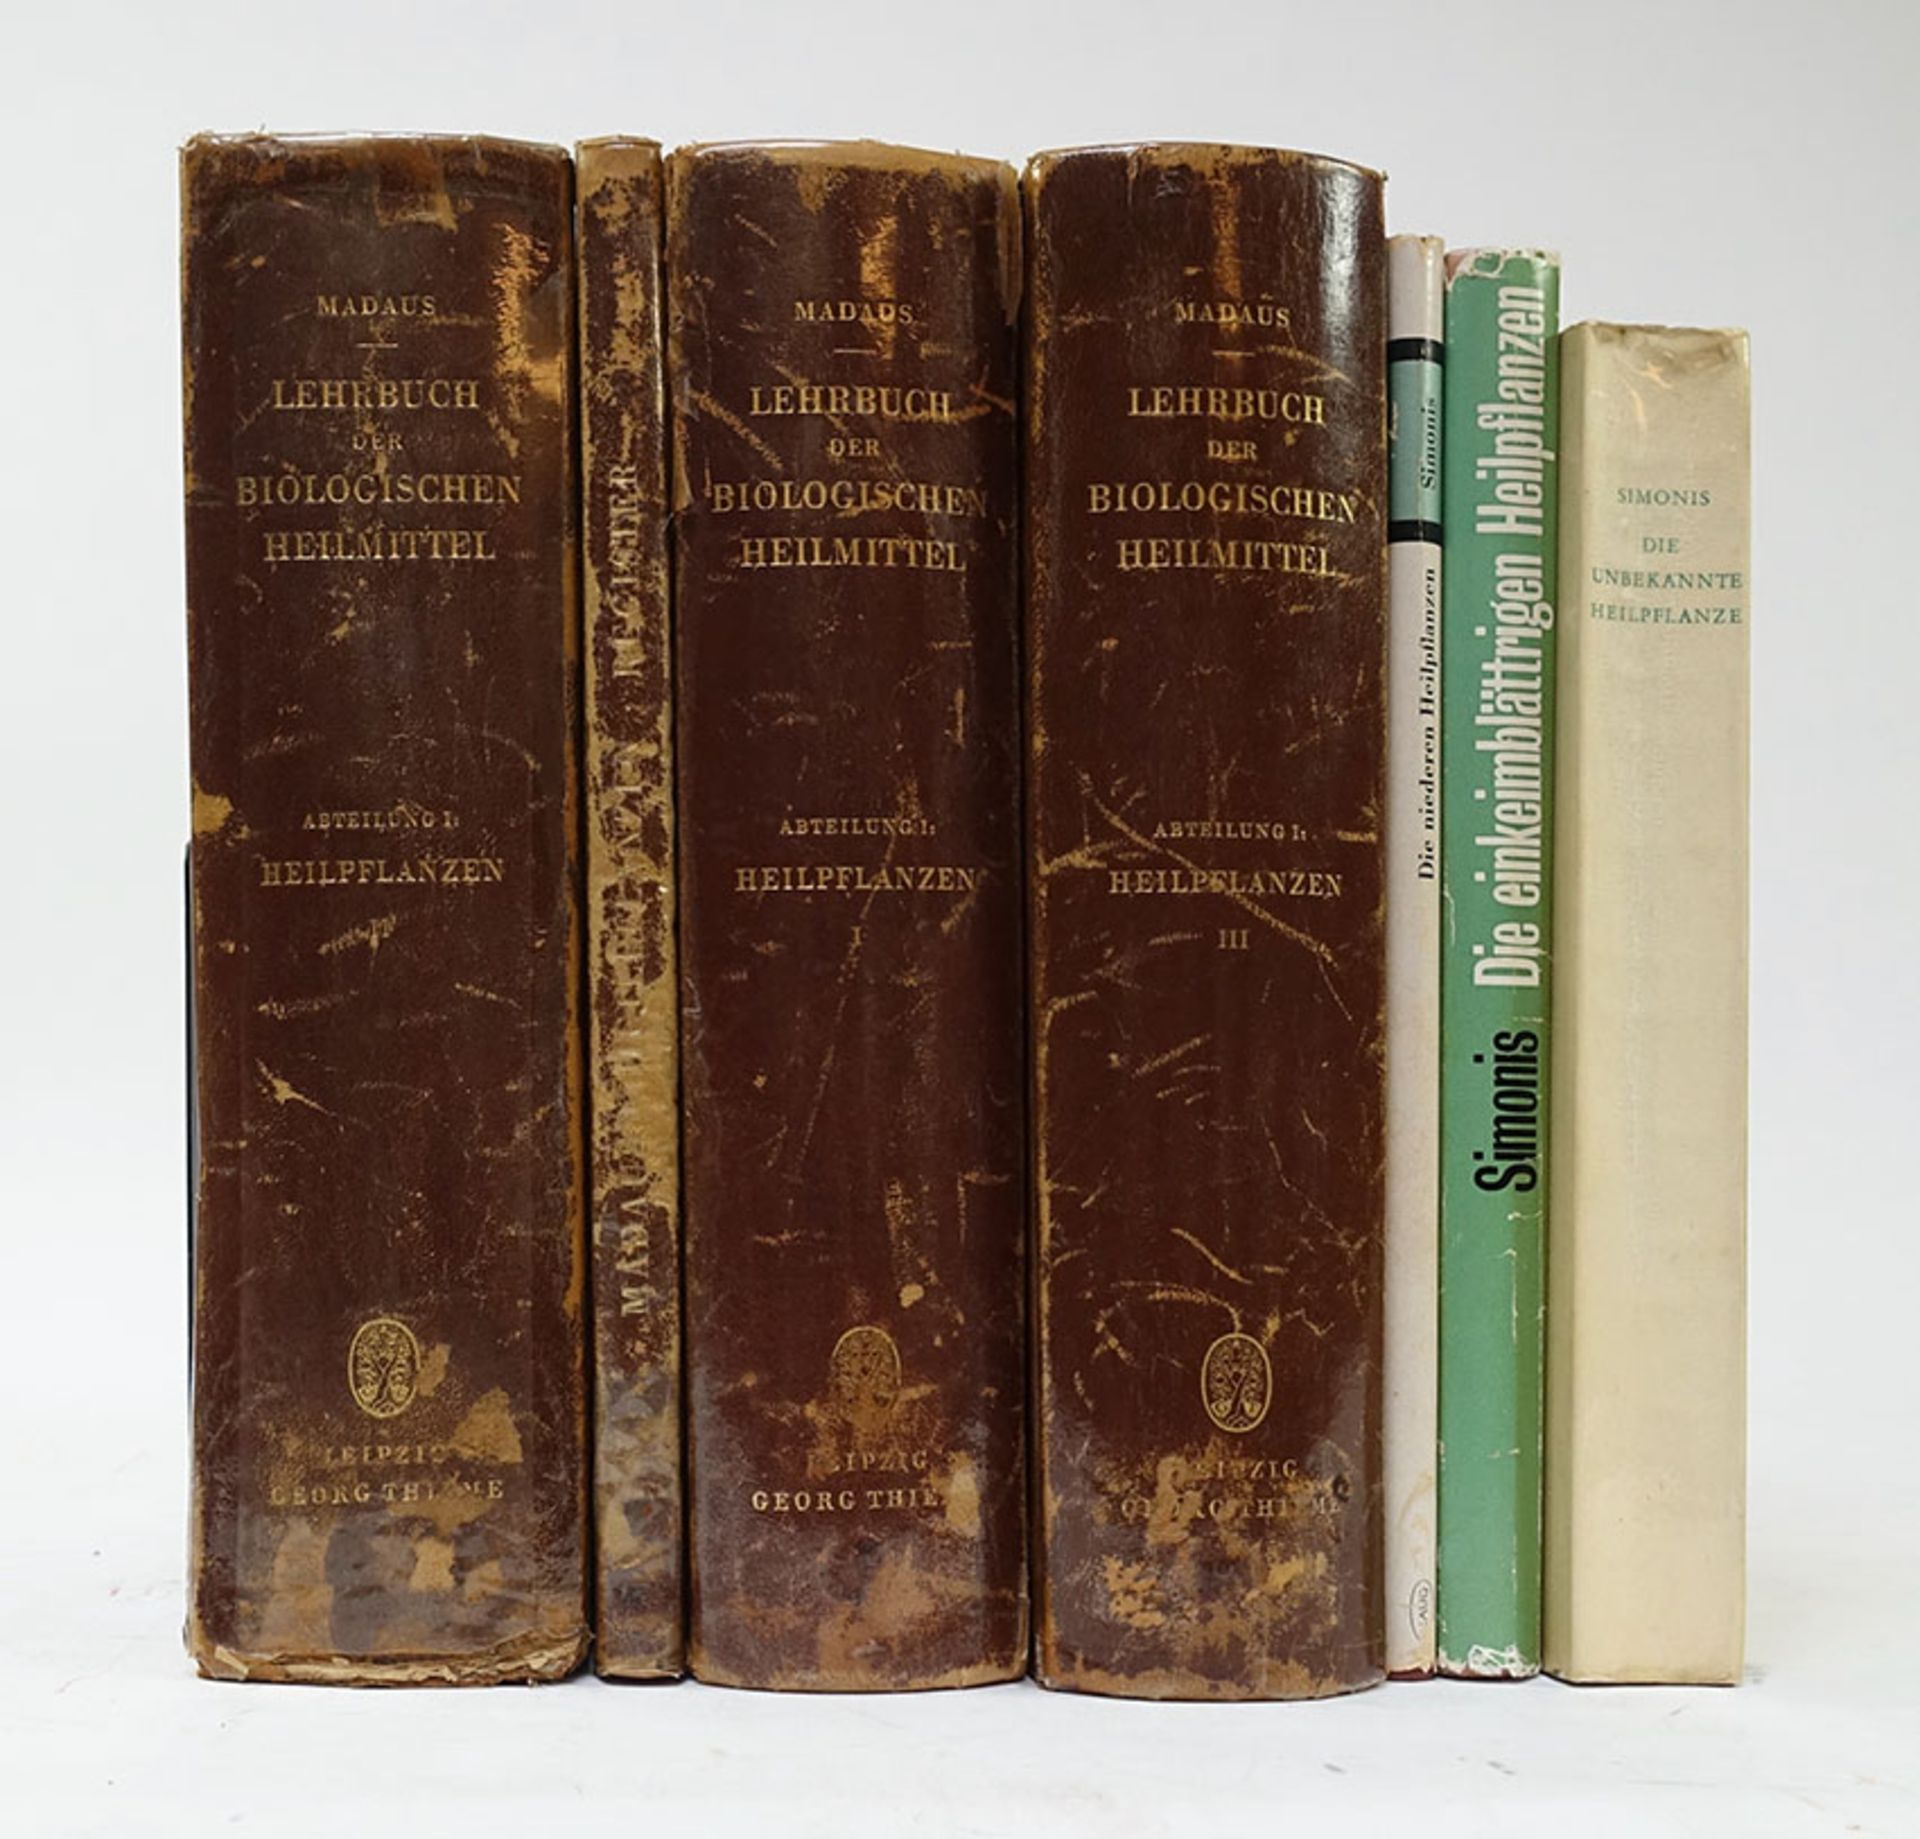 MADAUS, G. Lehrbuch der biologische Heilmittel. Abt. 1: Heilpflanzen. Lpz., 1938. 3 vols. & '